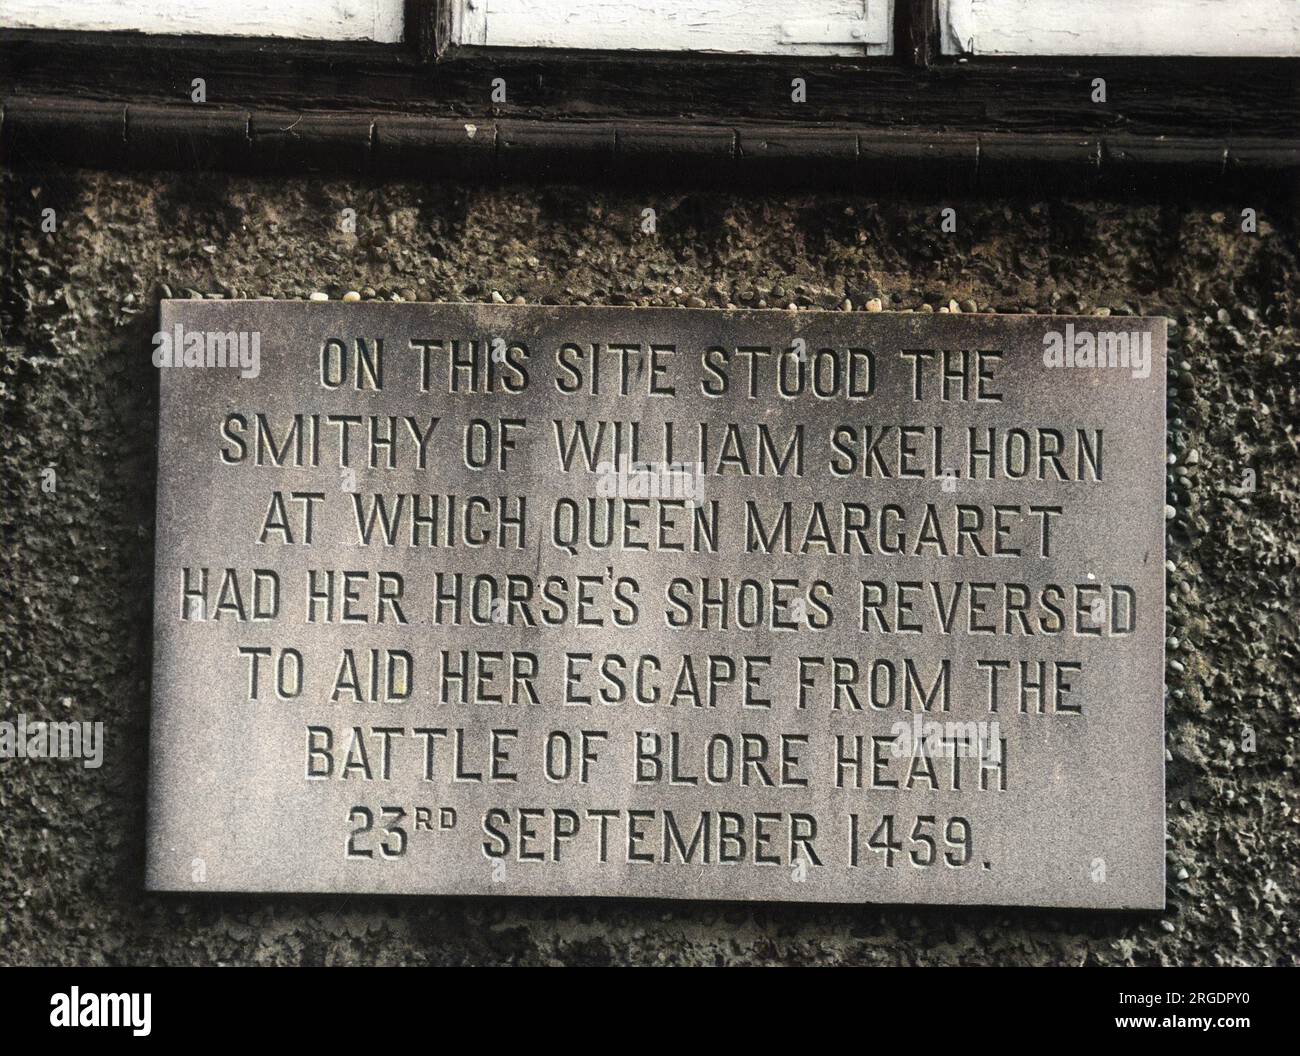 Eine Gedenktafel in Mucklestone, Shropshire, England, wo ein Schmied Queen Margarets Hufeisen umkehrte, um ihr bei der Flucht aus der Schlacht von Blore Heath zu helfen, am 23. September 1459. Stockfoto